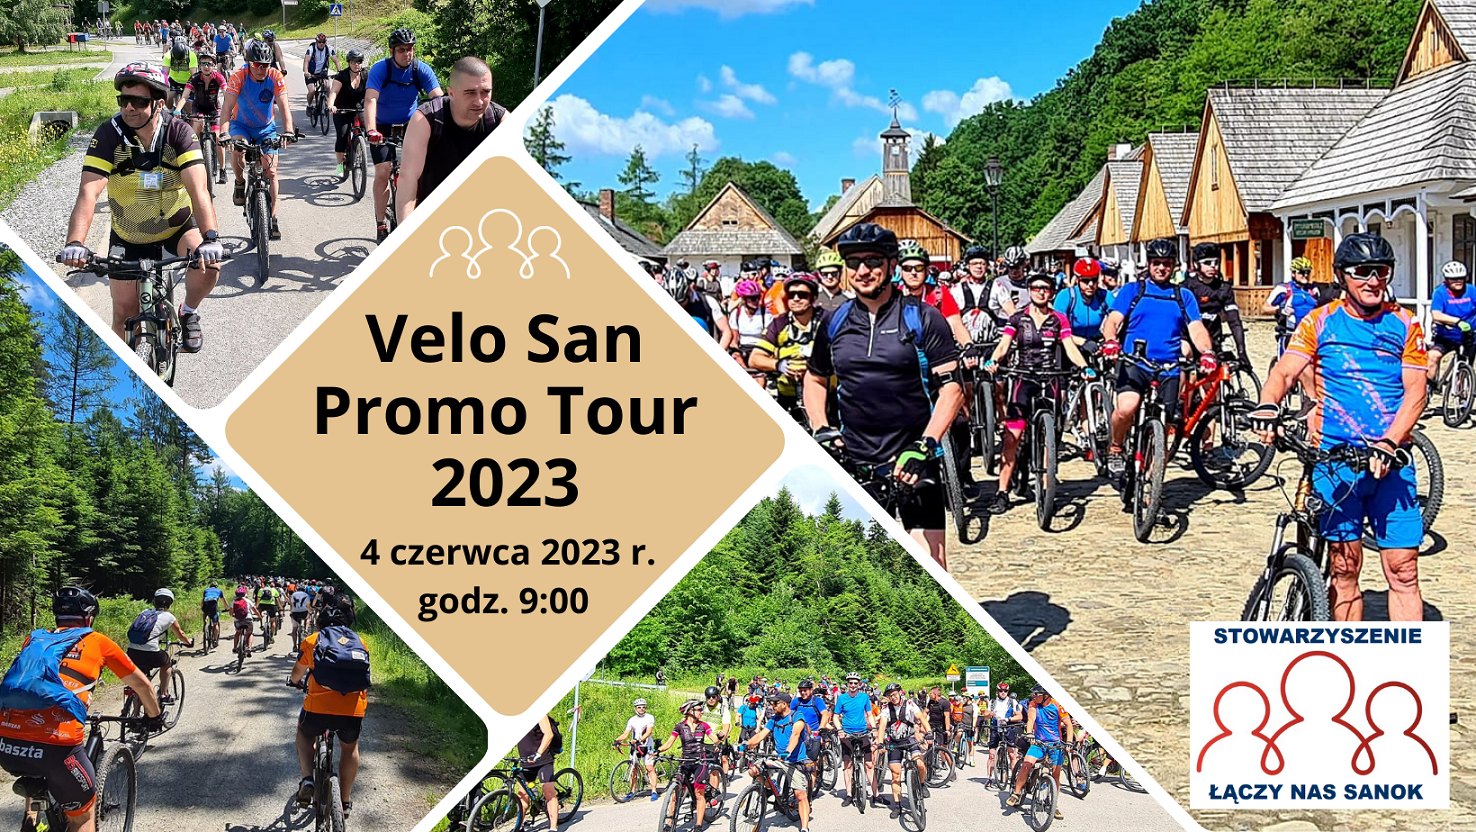 Velo San Promo Tour 2023